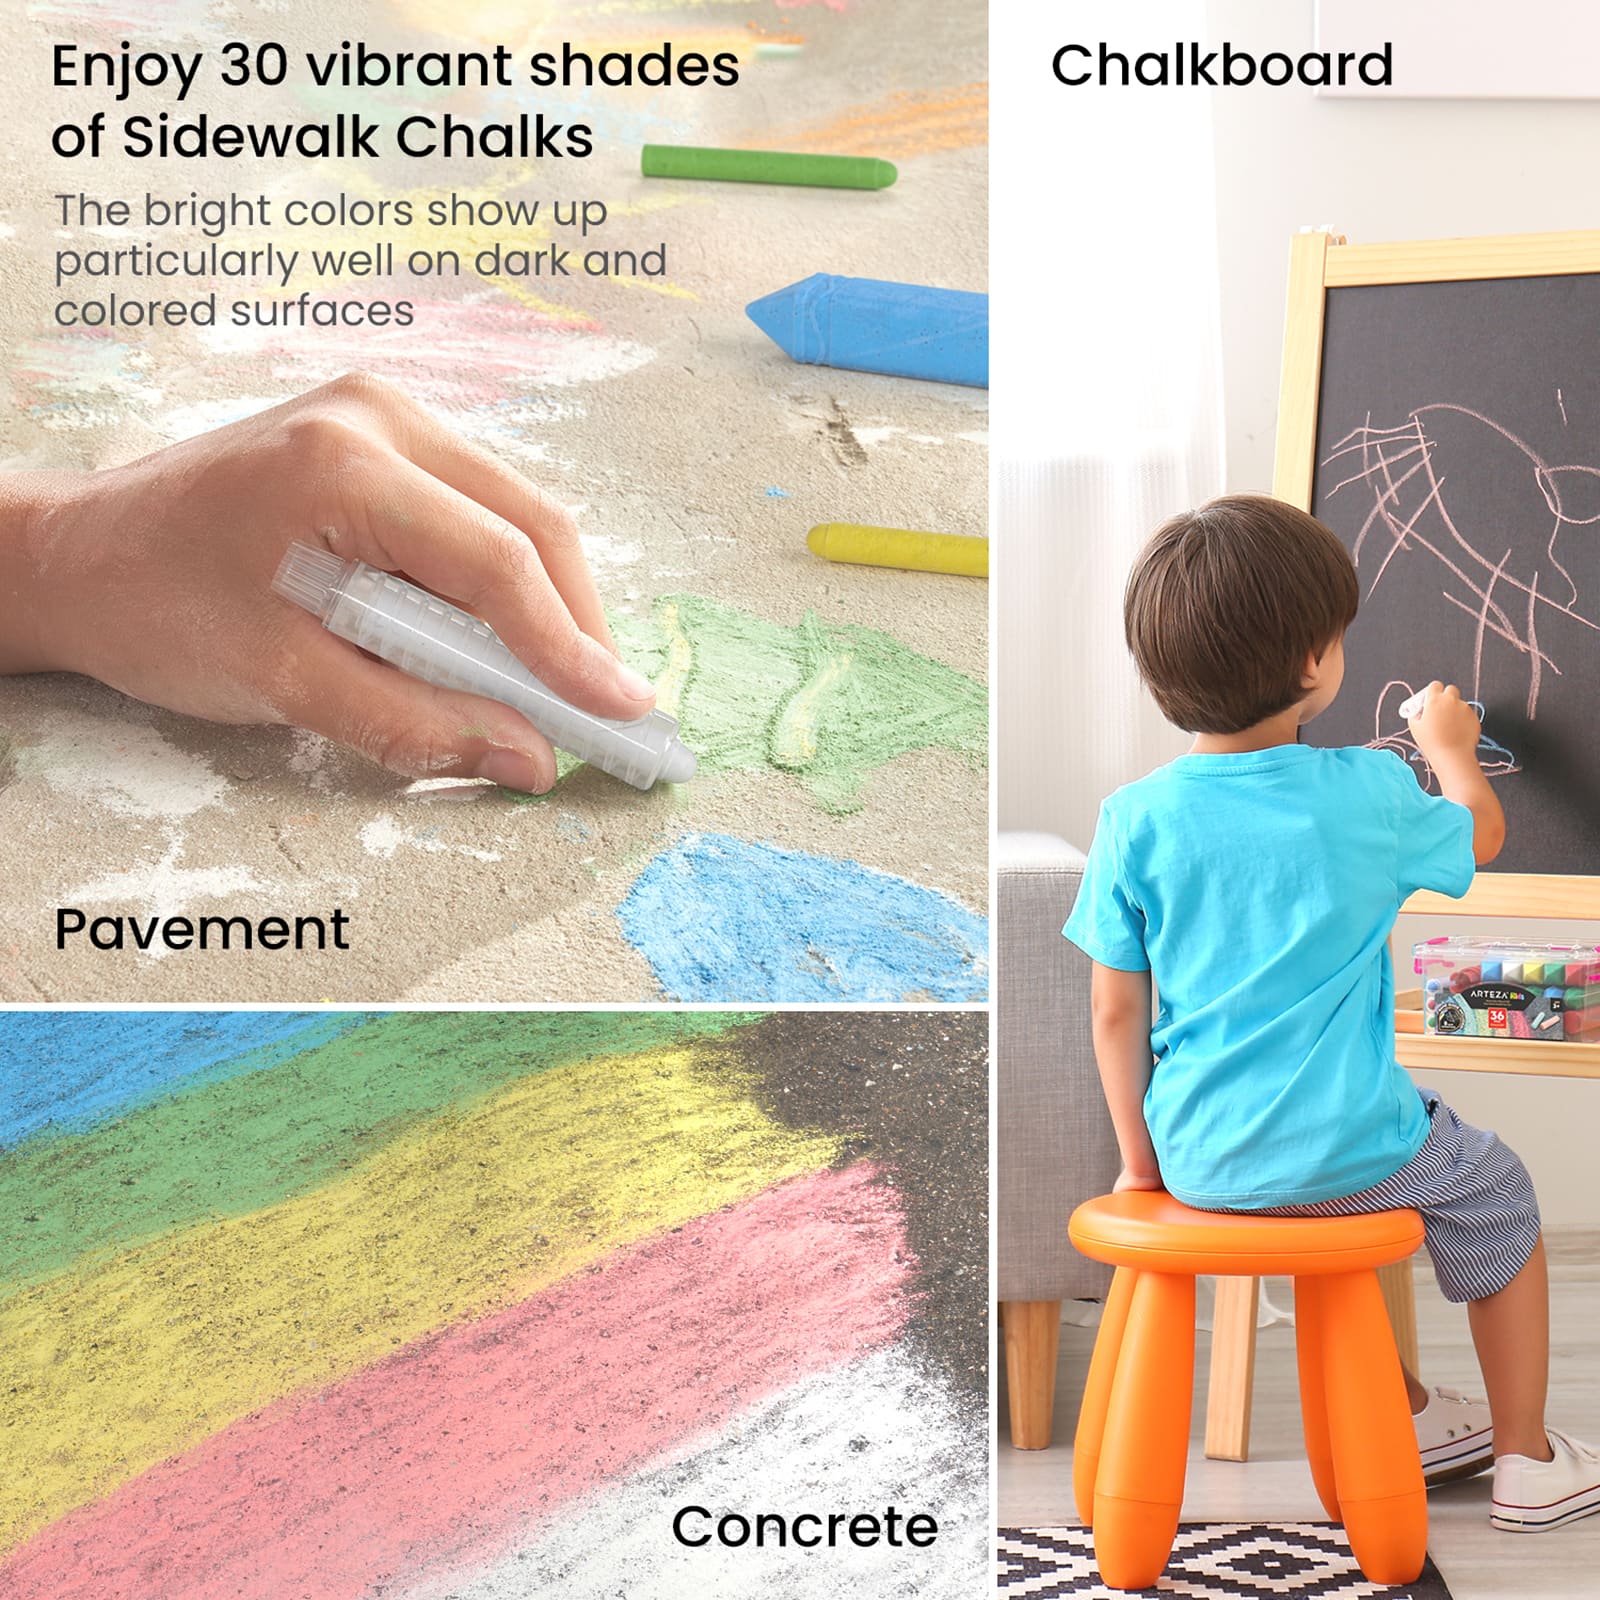 Arteza&#xAE; Kids Ultimate Chalk Set of 37 pcs, Pink Box Handle